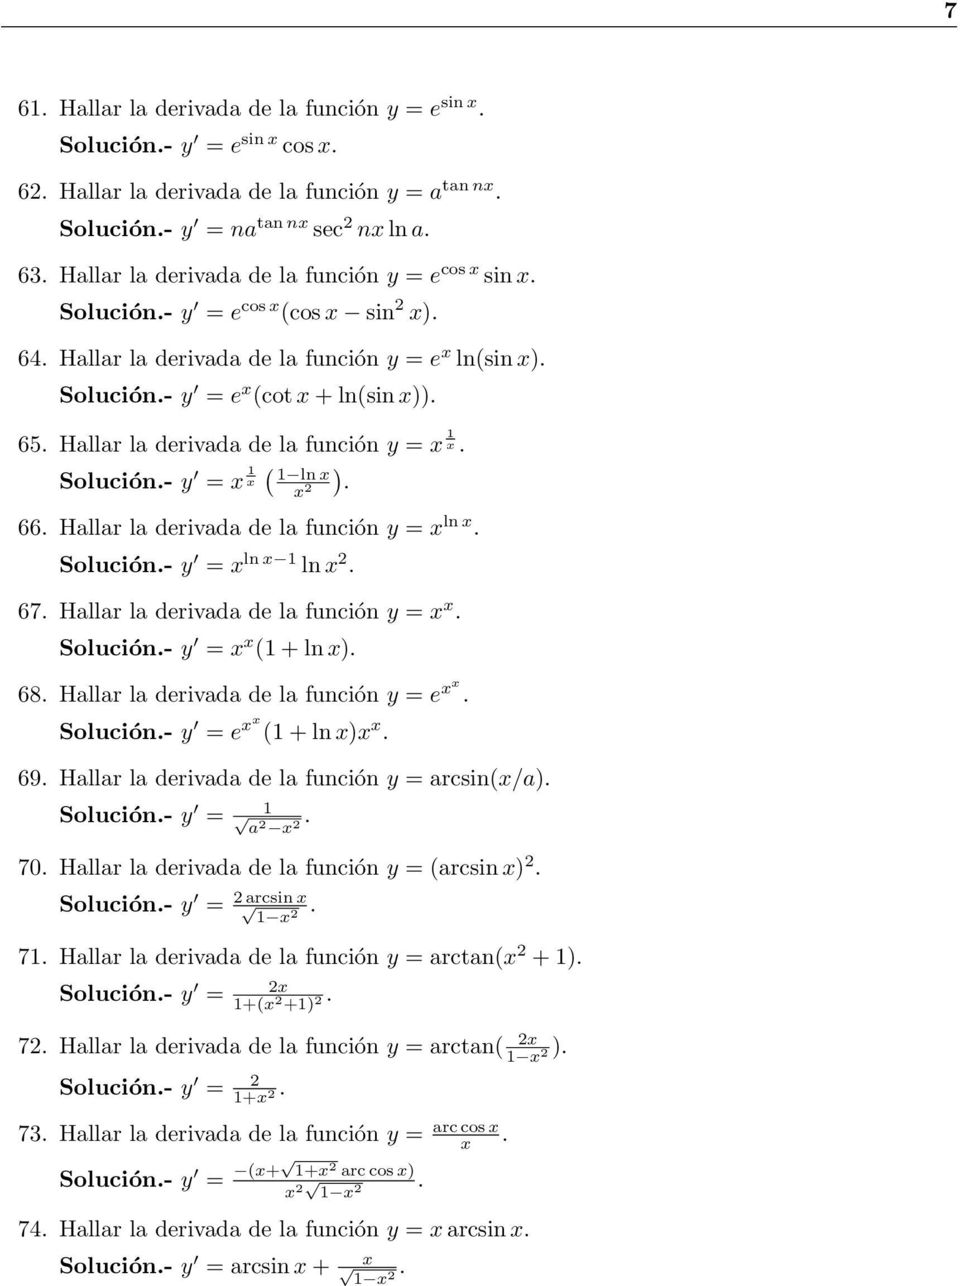 función y = ln Solución- y = ln ln 67 Hallar la erivaa e la función y = Solución- y = ( + ln ) 68 Hallar la erivaa e la función y = e Solución- y = e ( + ln ) 69 Hallar la erivaa e la función y =